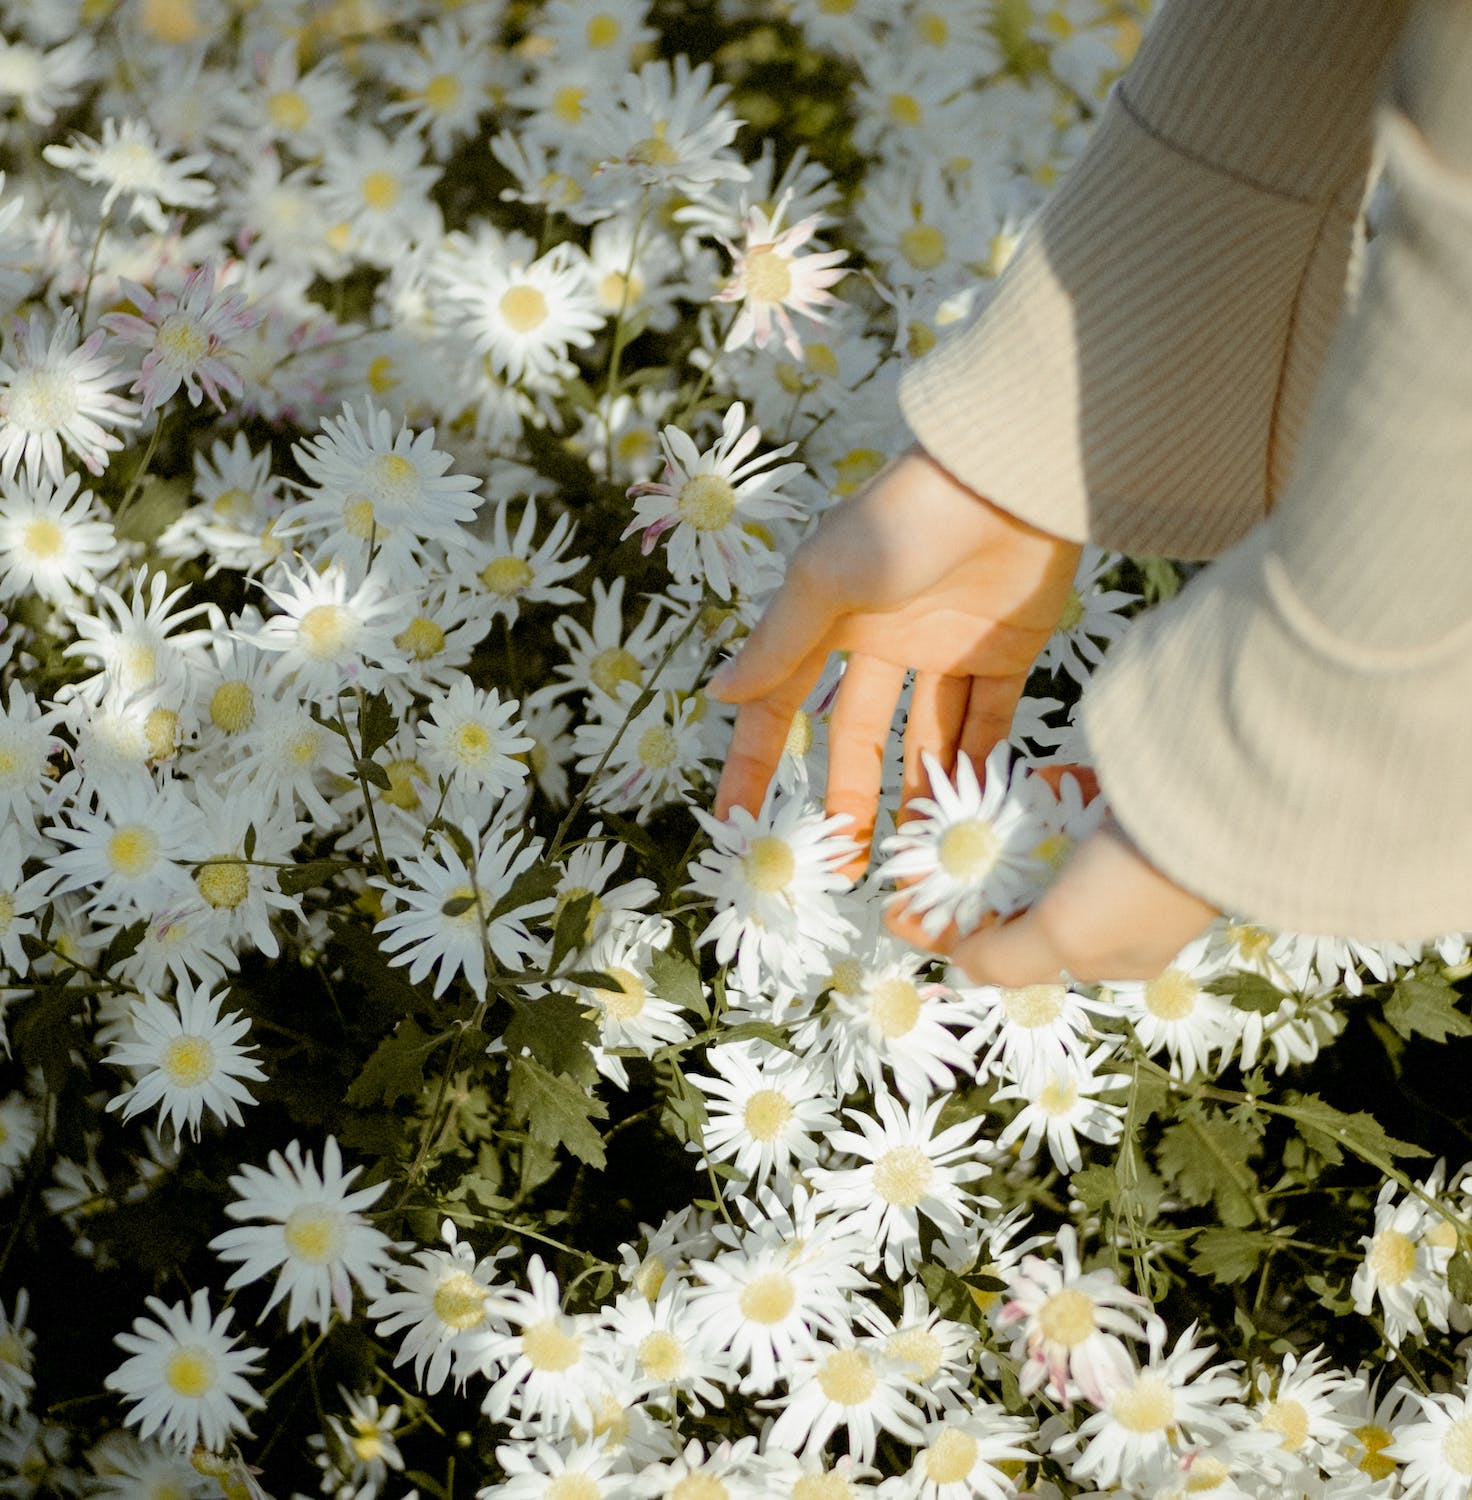 꽃들이 만개한 곳에 한 여성의 손이 꽃을 만지고 있다.